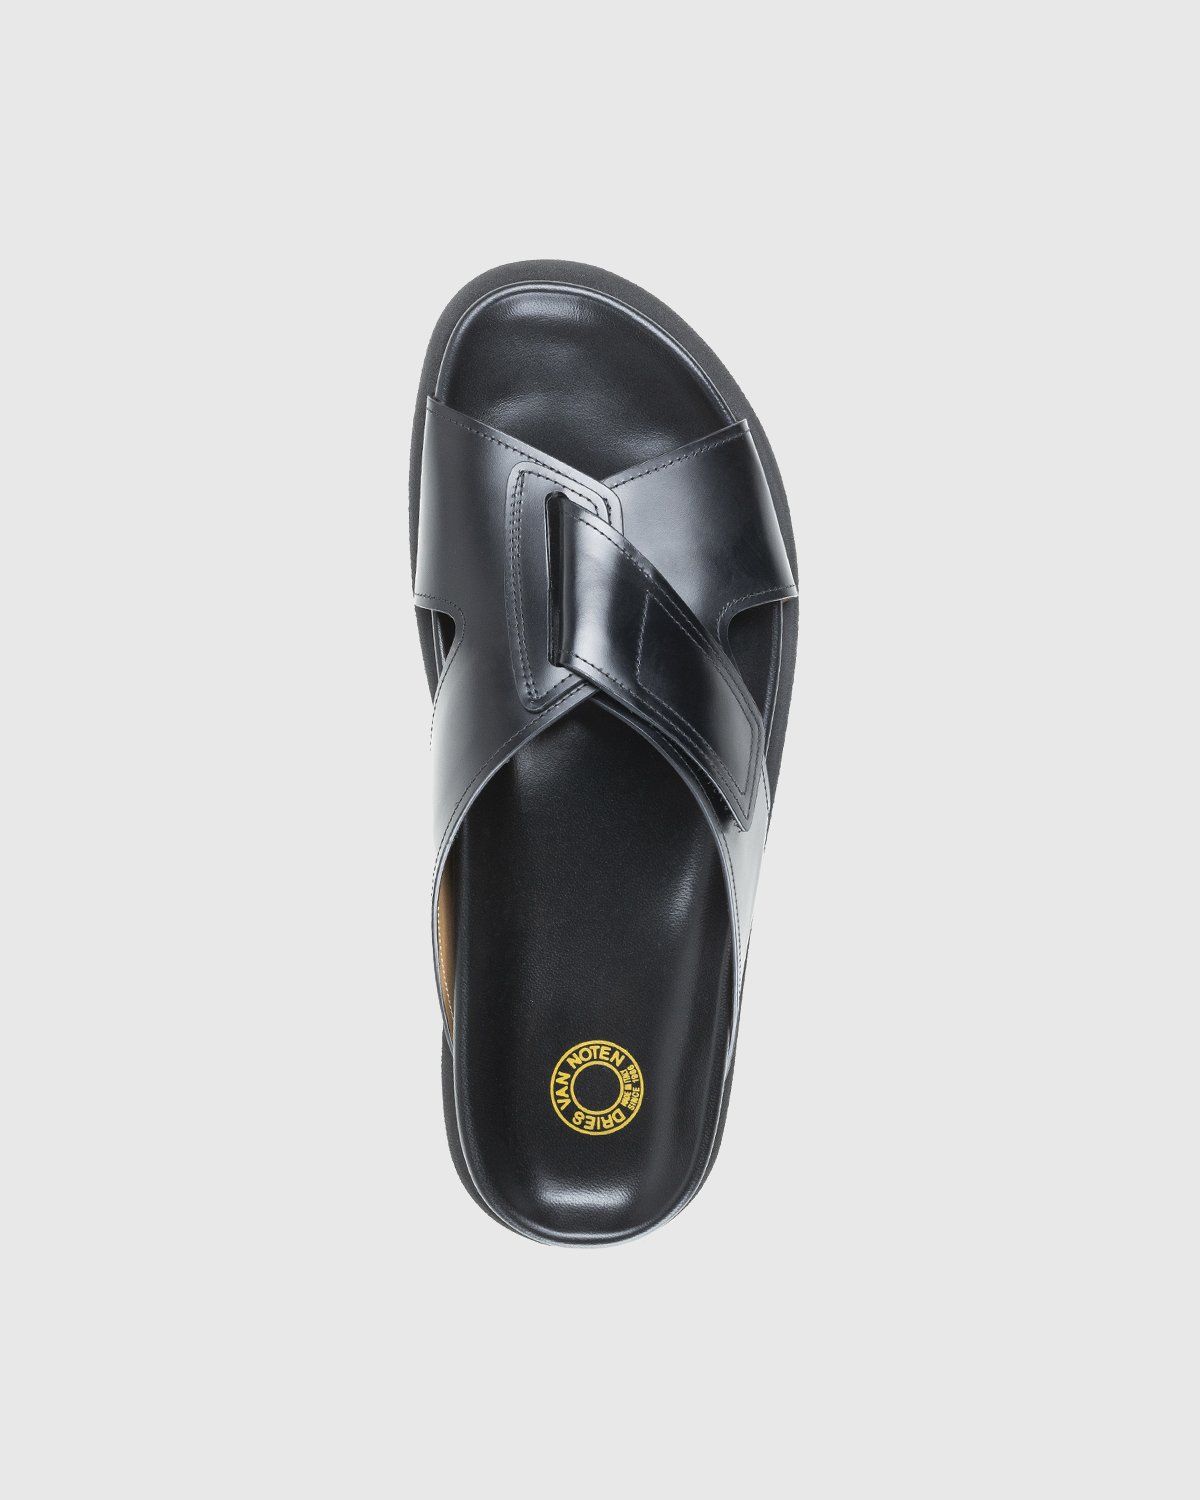 Dries Van Noten – Leather Criss-Cross Sandals Black - Image 5